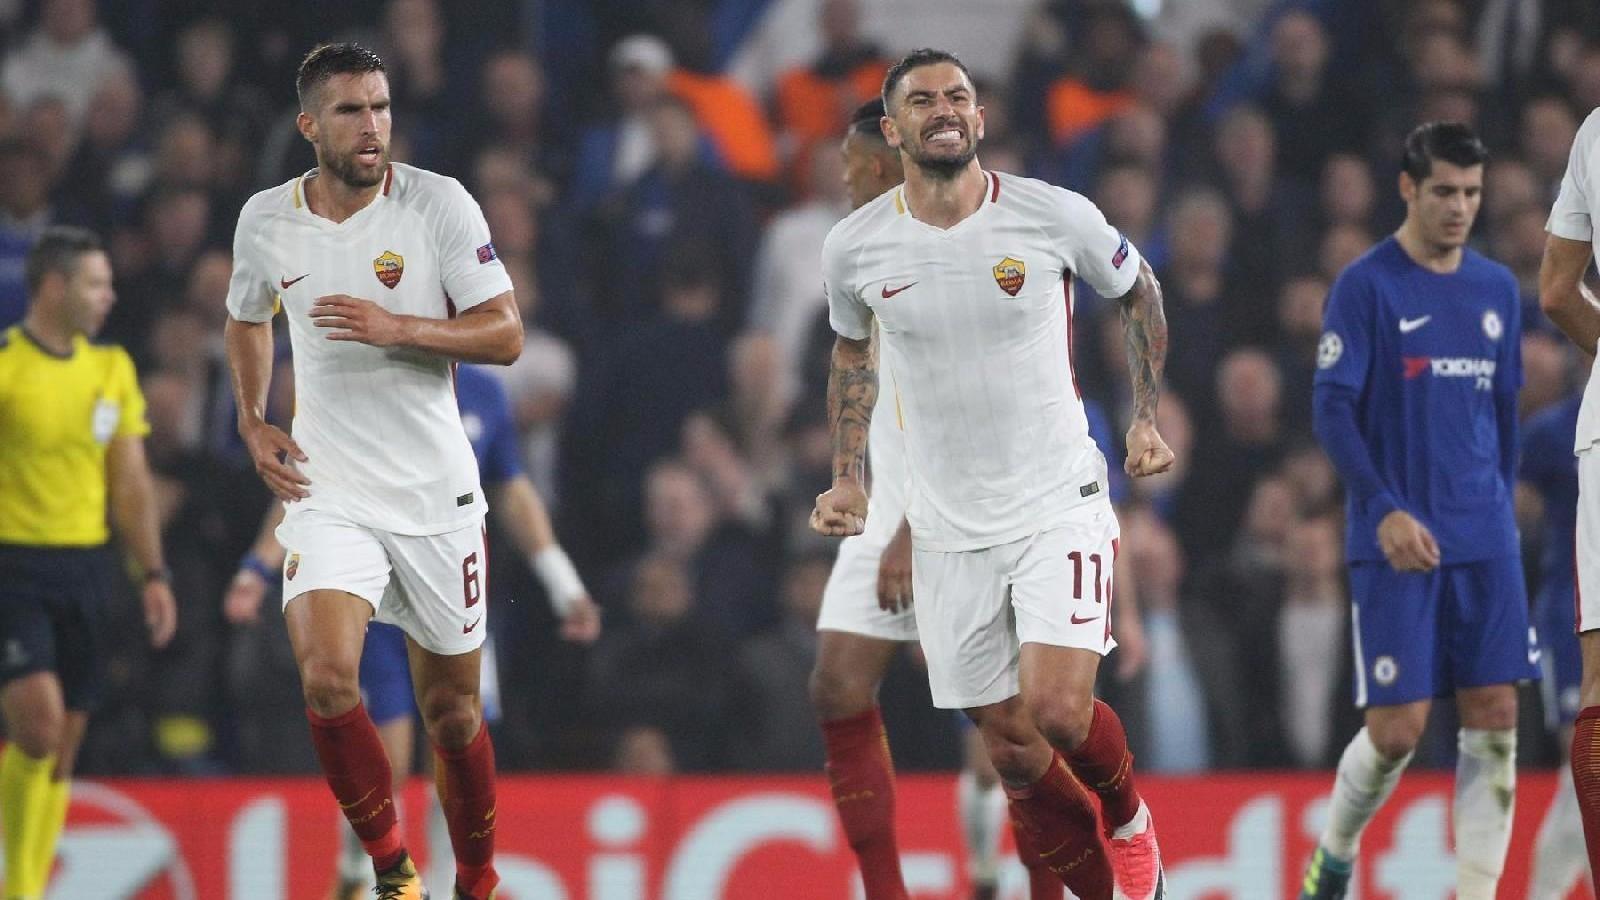 [FOTO] Chelsea-Roma 3-3: la reazione social dei calciatori giallorossi